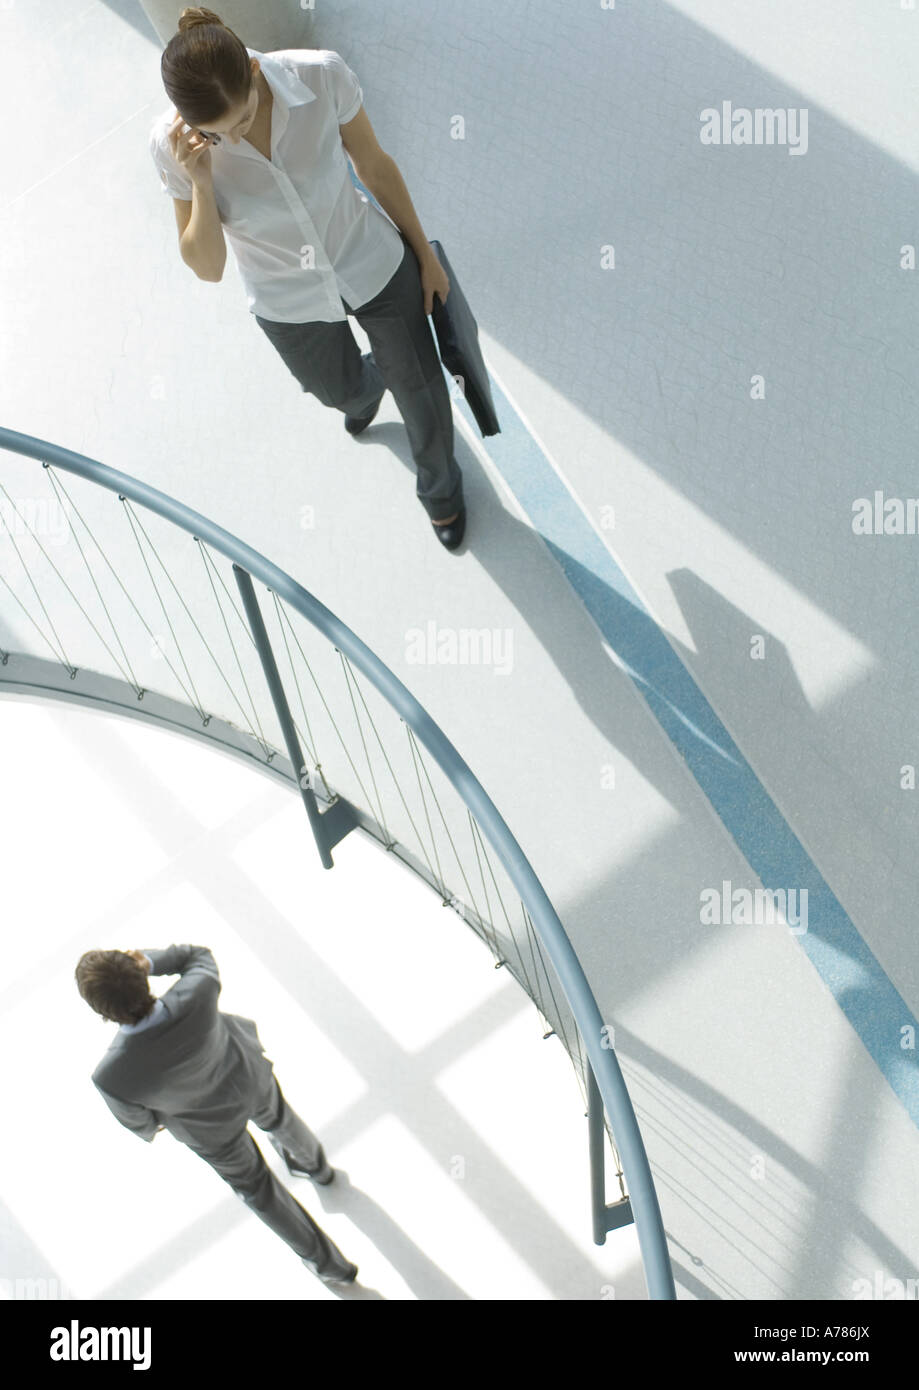 Woman près de garde-fous, à l'étage inférieur, businessman walking by using cell phone, high angle view Banque D'Images